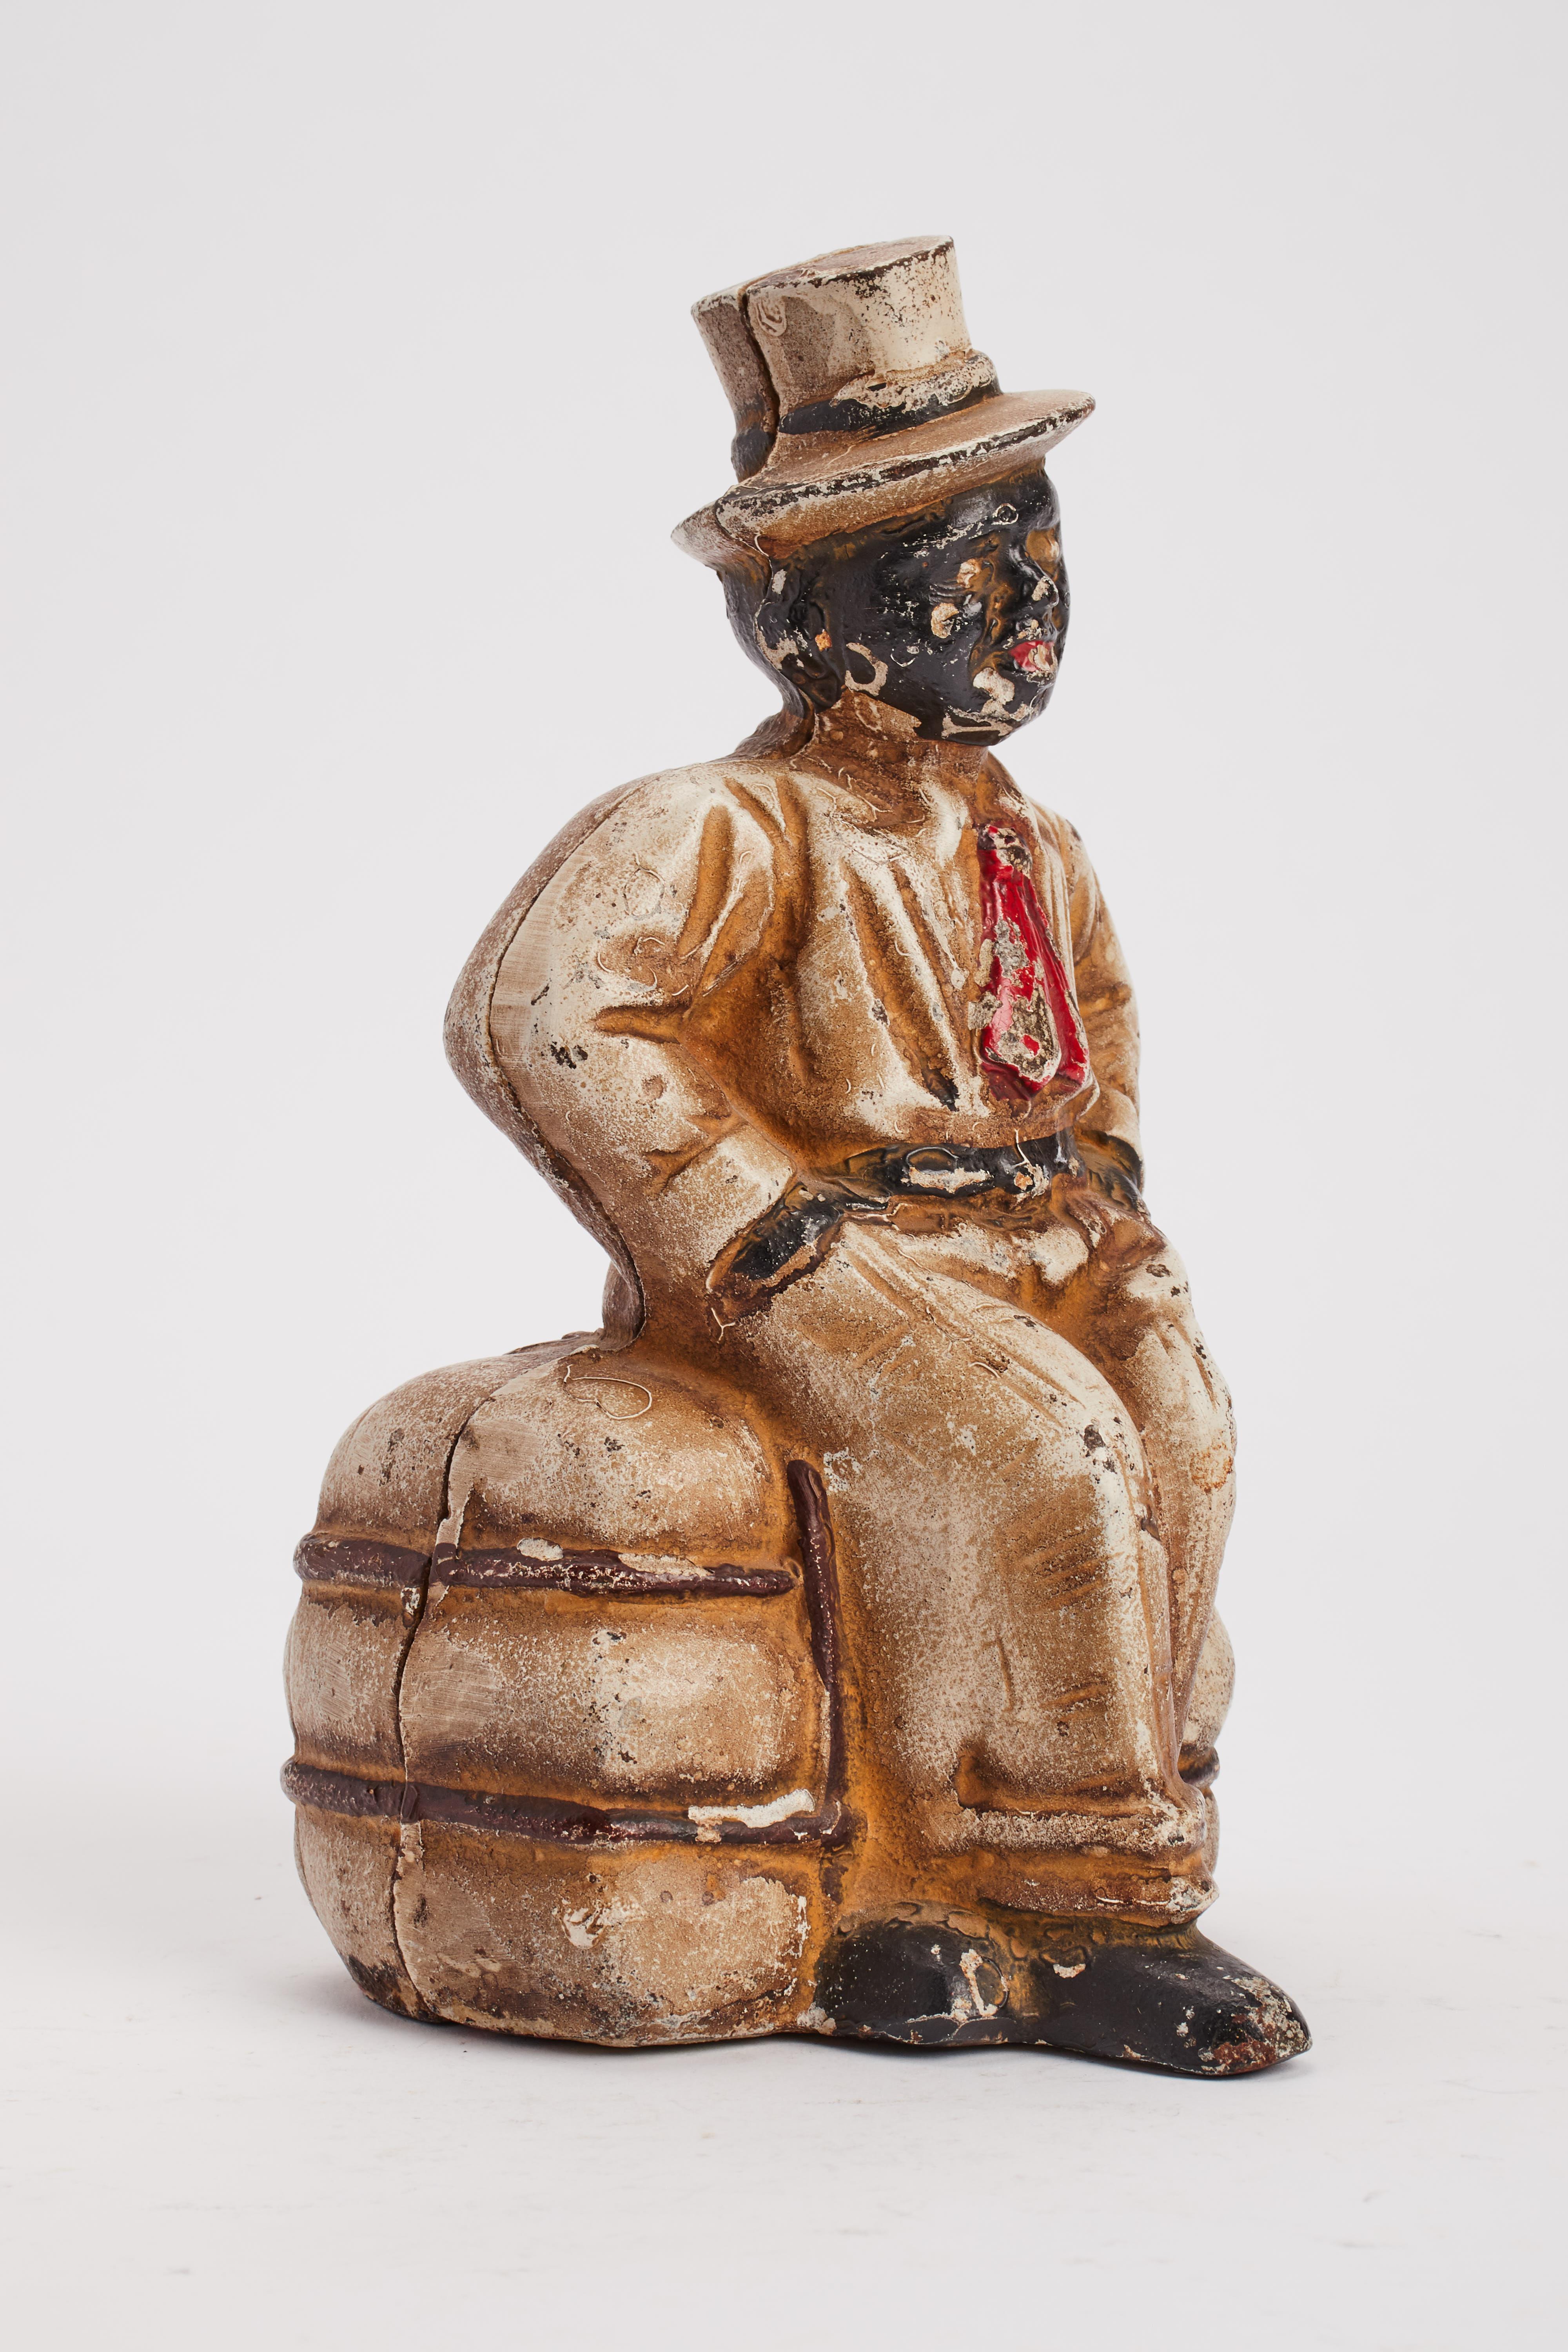 Bemalte gusseiserne Spardose mit der Darstellung eines Afroamerikaners, der auf einem Baumwollballen sitzt. USA 1920 ca.